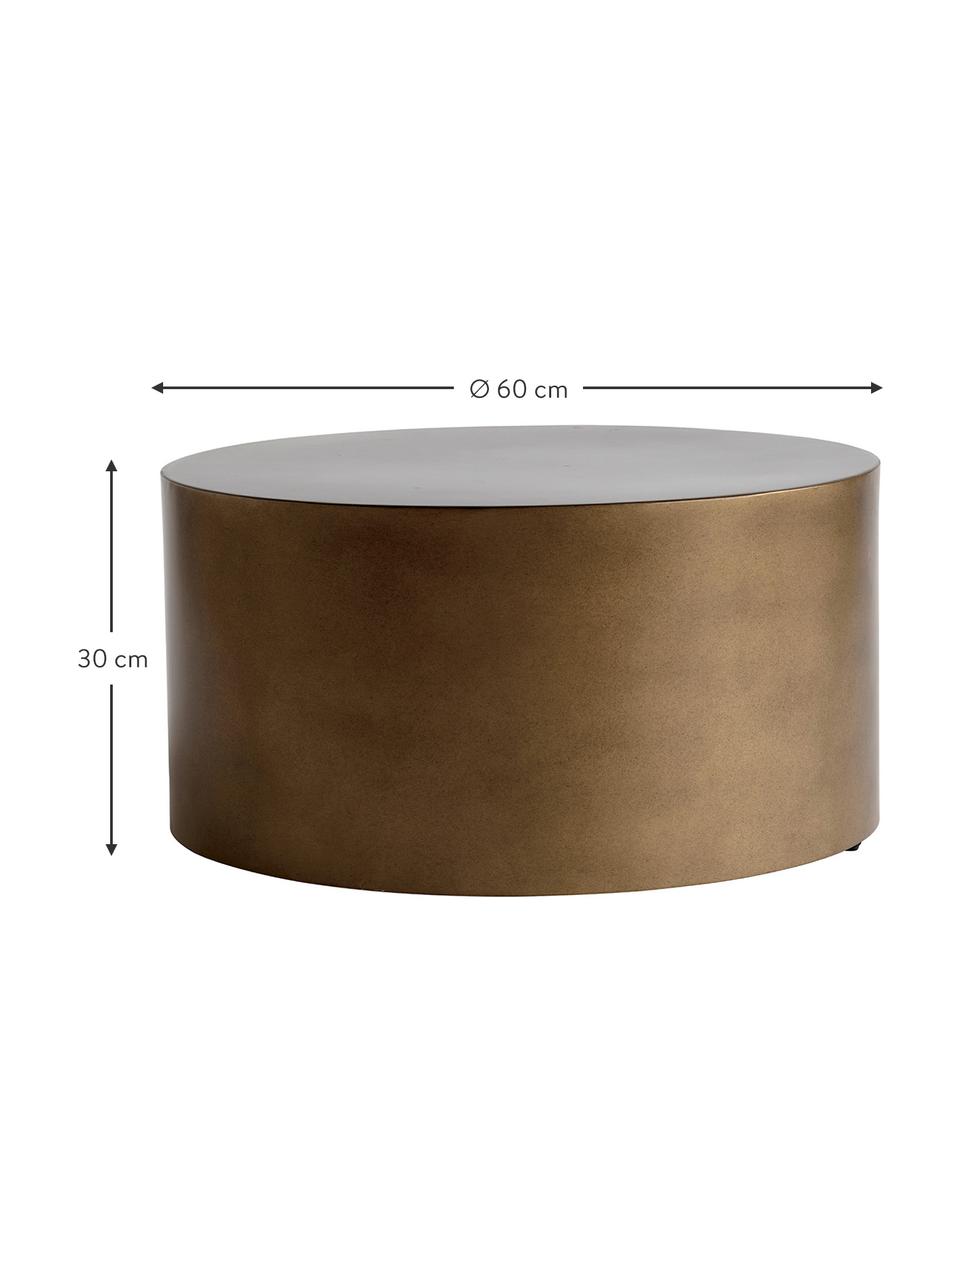 Ronde metalen salontafel Metdrum in honingkleuren, Metaal, Honingkleurig, Ø 60 x H 30 cm